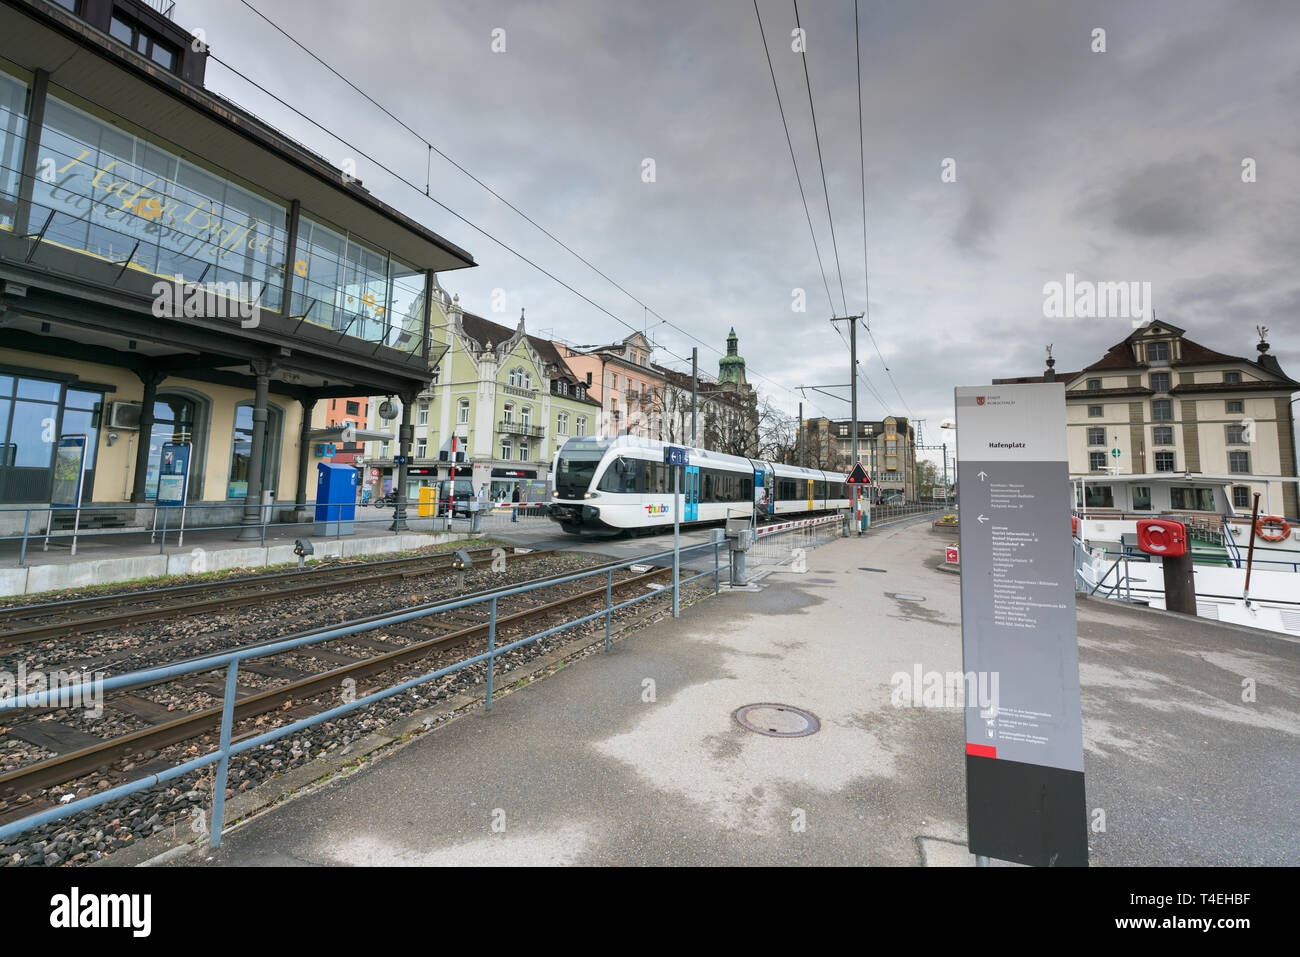 Rorschach, SG/Schweiz - am 8. April, 2019: S-Bahn in den Bahnhof von  Rorschach Hafen am Bodensee Stockfotografie - Alamy